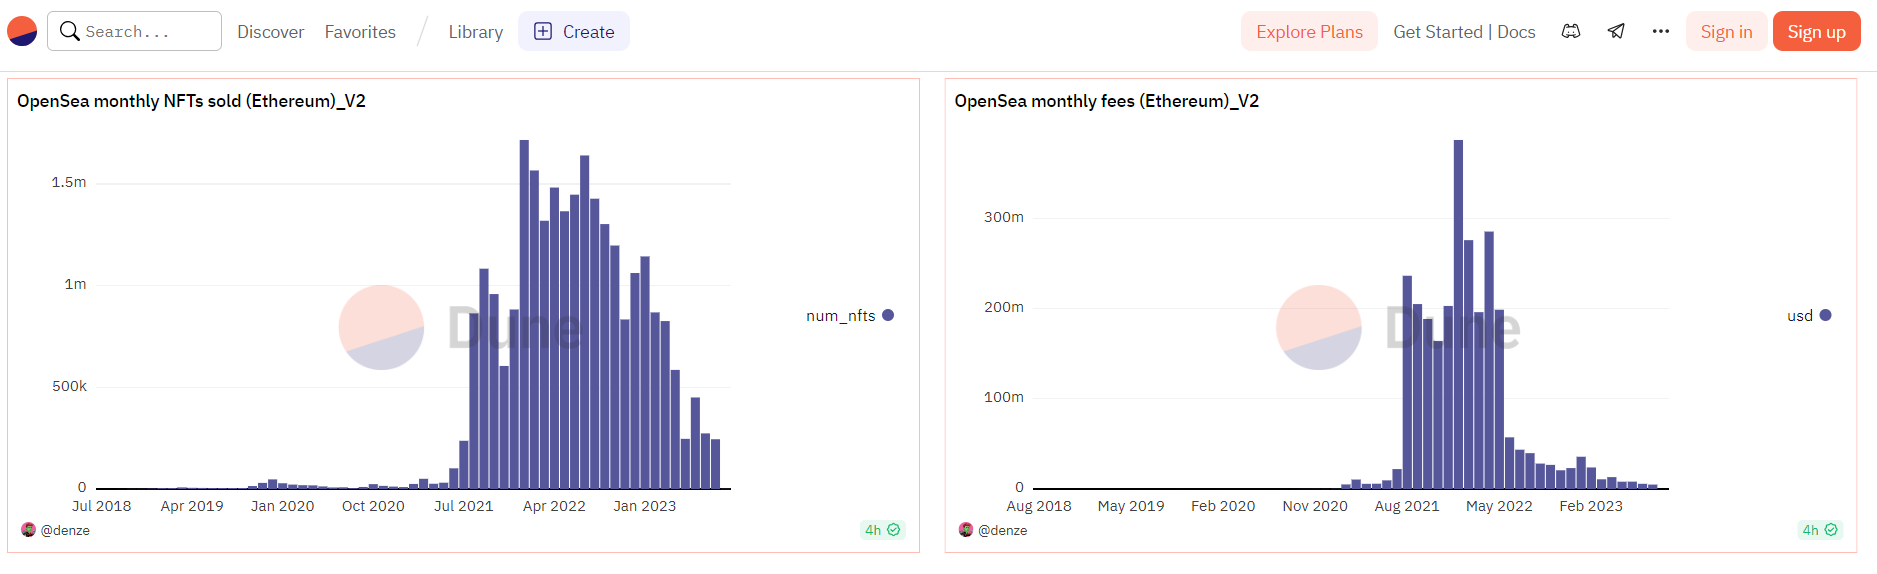 حجم ماهانه دلار OpenSea به 106 میلیون دلار در معاملات اتریوم رسید